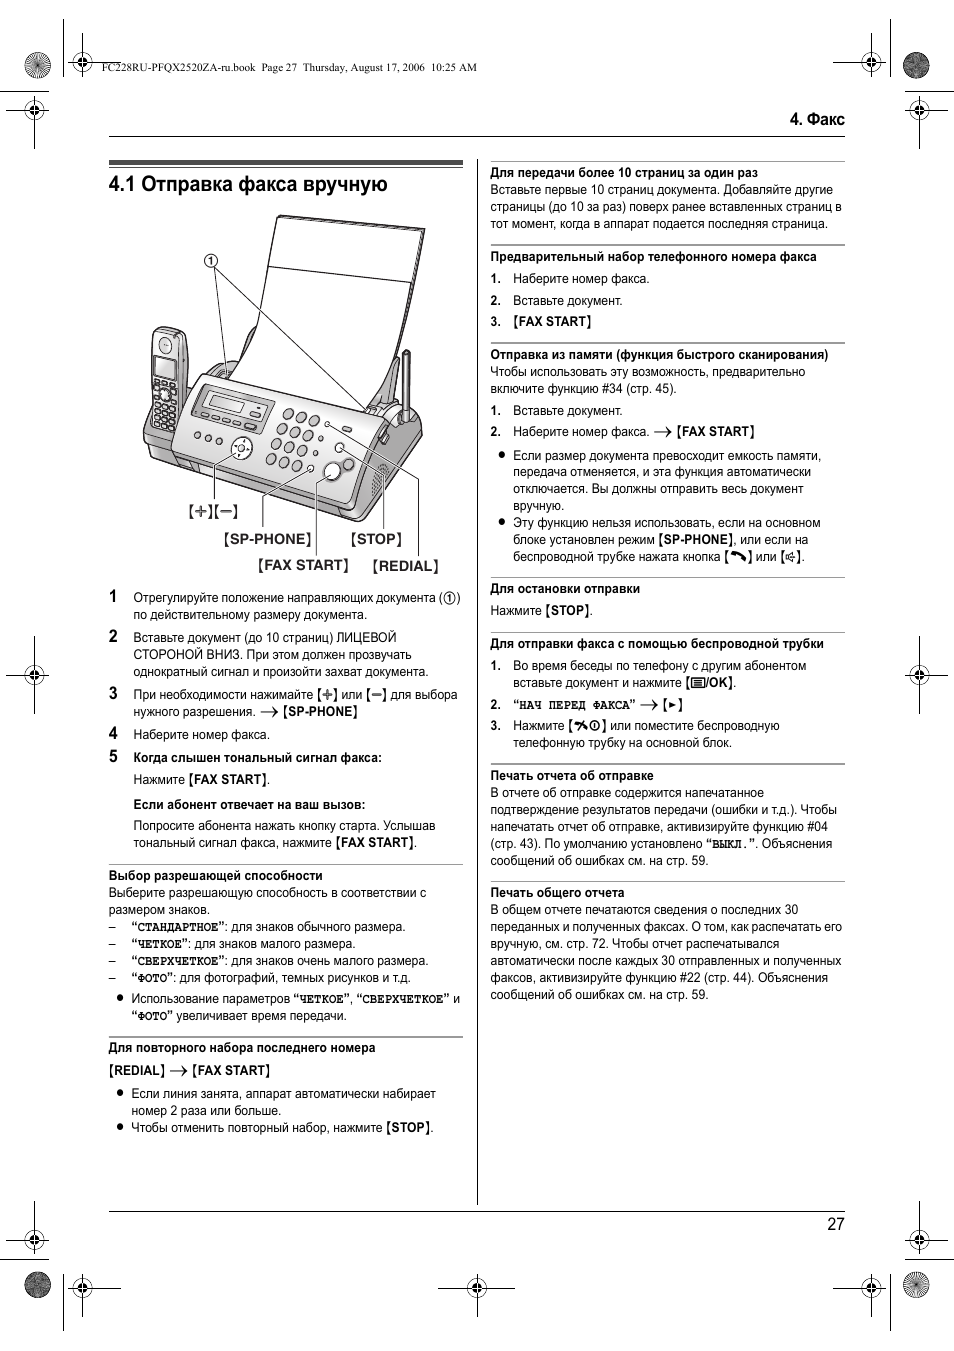 Инструкция по отправки факсов